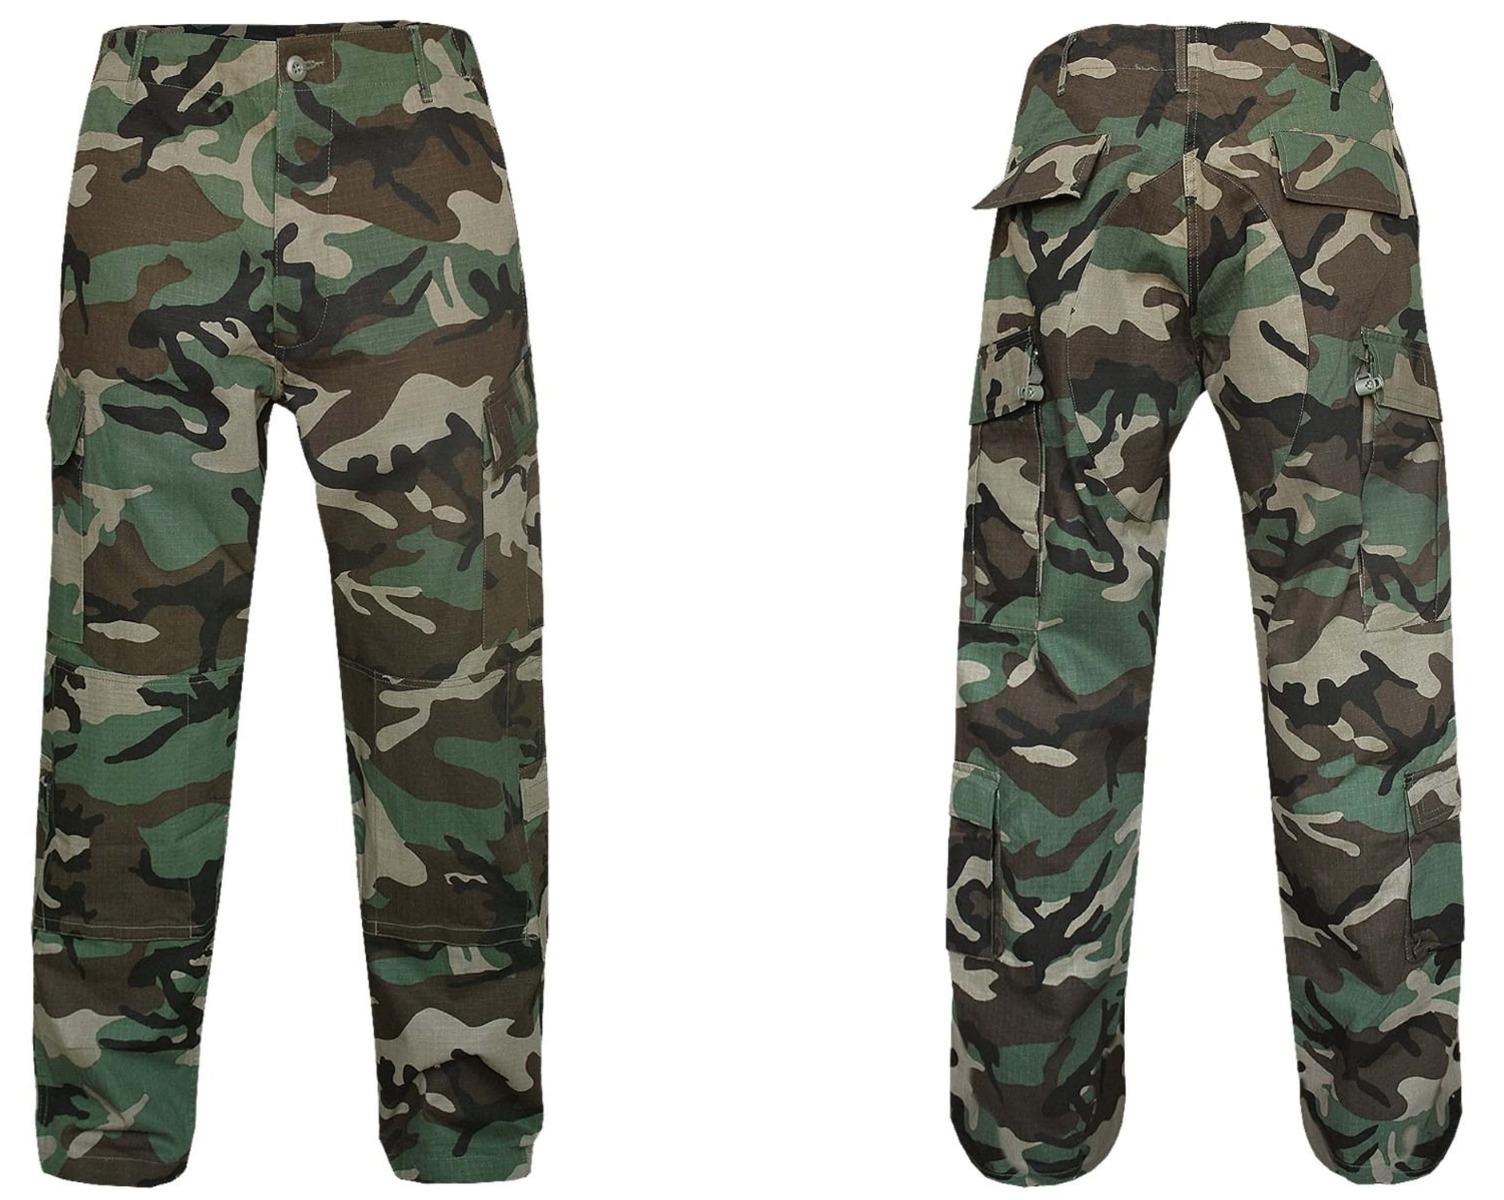 Pridobite svoj par US vojaških hlač ACU woodland - vrhunske taktične hlače za udobje, vzdržljivost in funkcionalnost. Primerno za vojaške operacije, pohodništvo, lov in varnostne sile. Opremite se s kakovostnim vojaškim oblačilom!